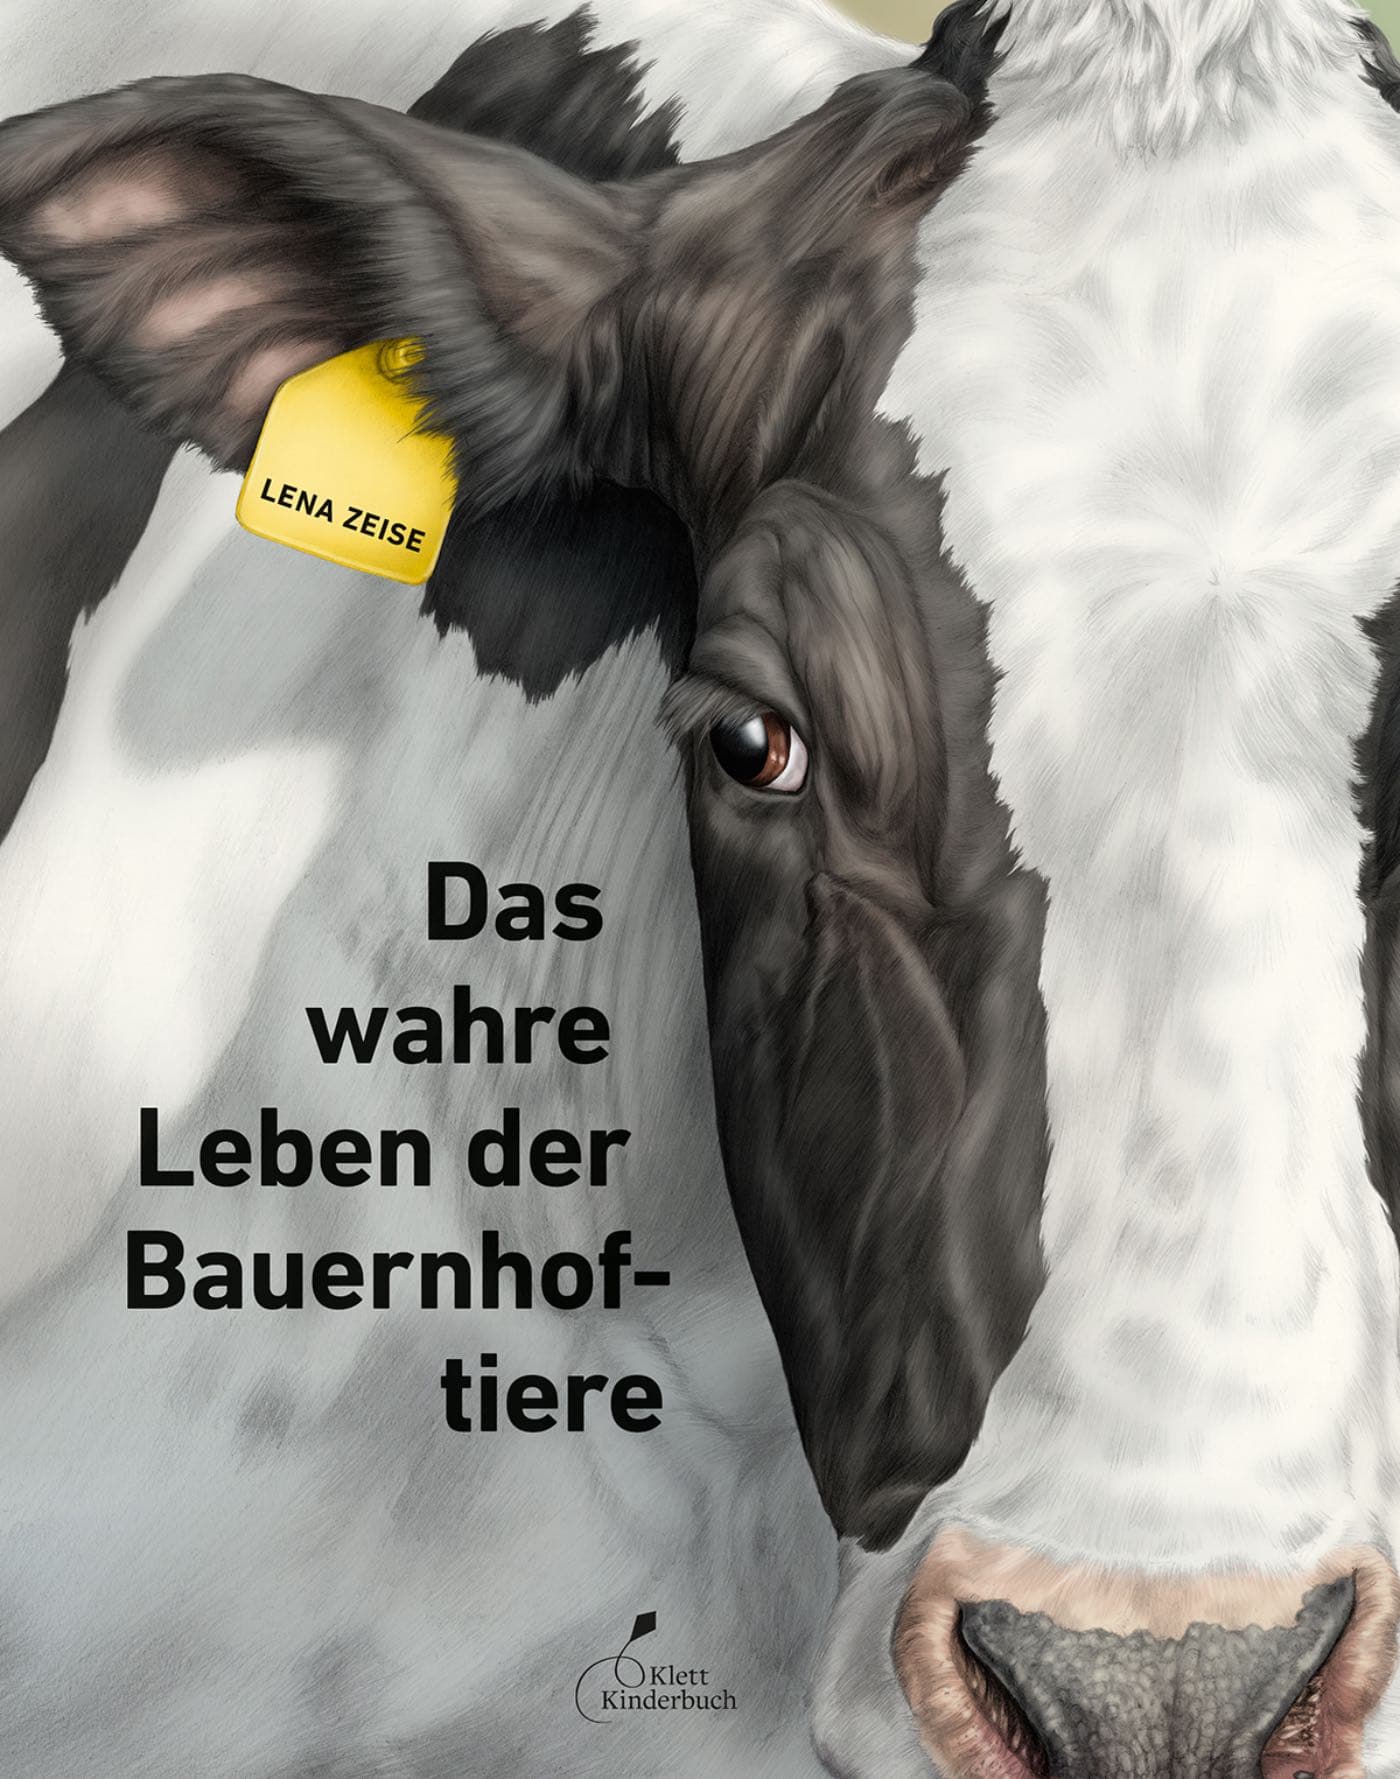 Deutscher Jugendliteraturpreis 2021, nominiertes Sachbuch für Kinder: Das wahre Leben der Bauernhoftiere // HIMBEER